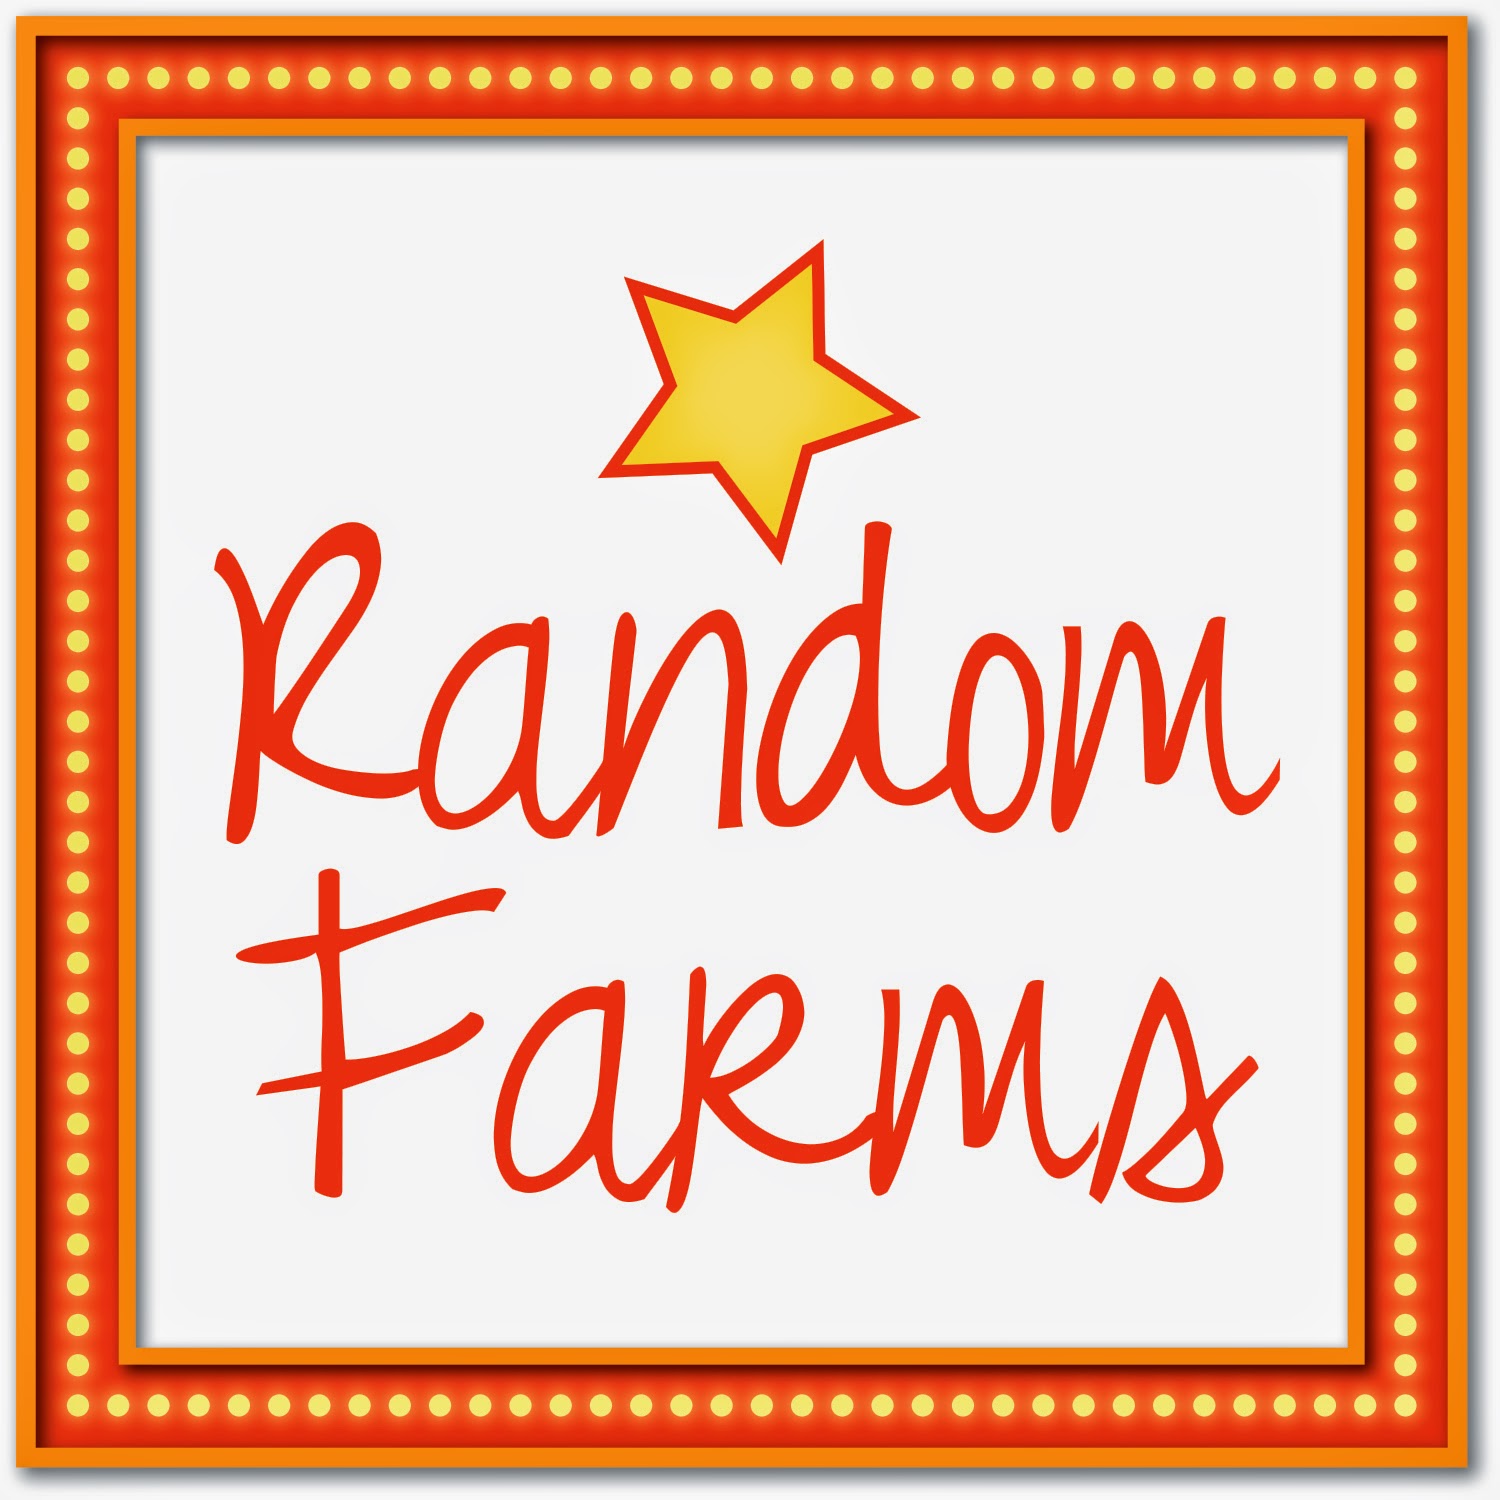 About Random Farms